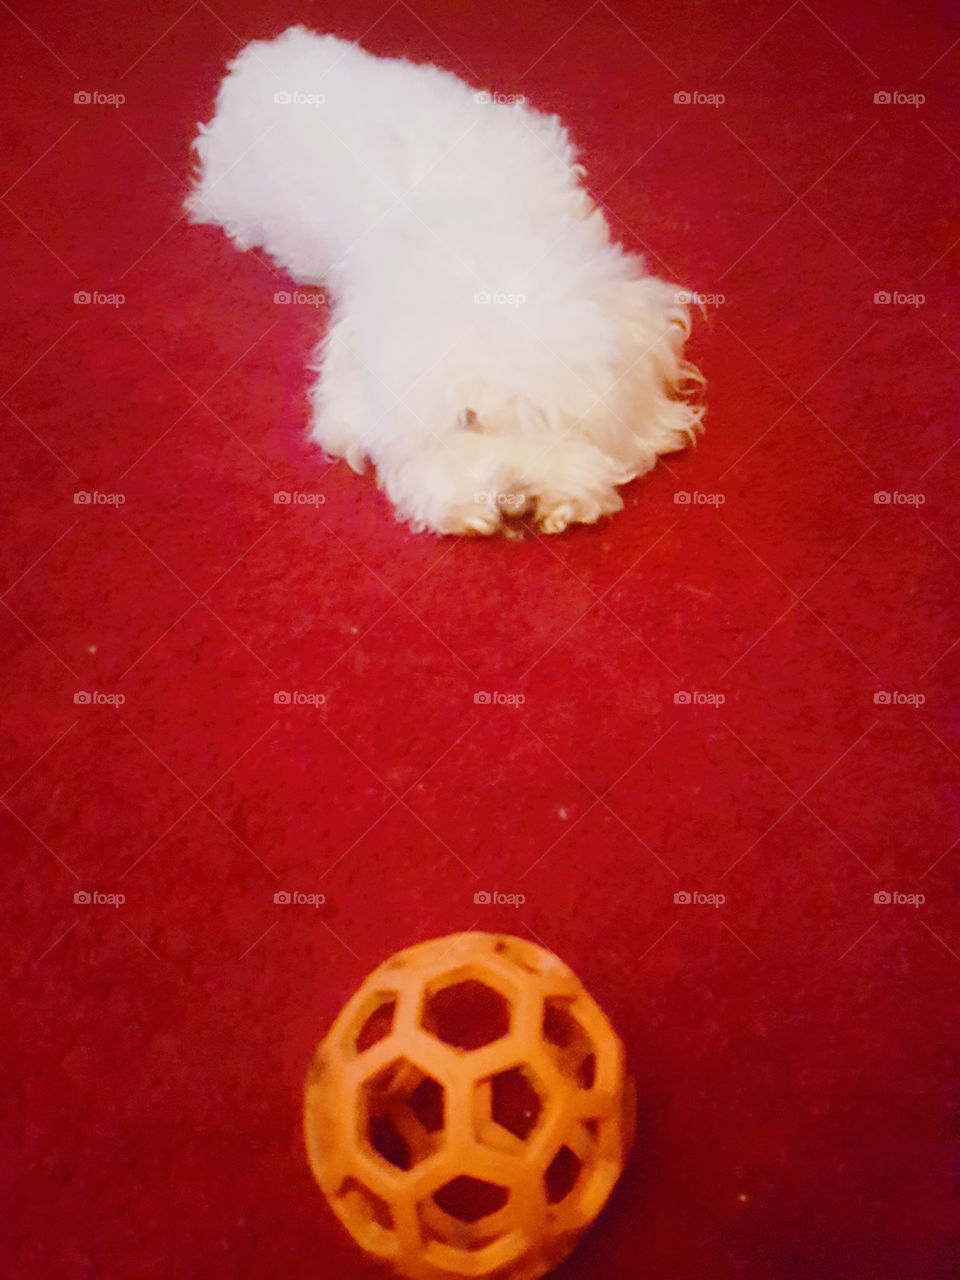 A Dog & Her Ball